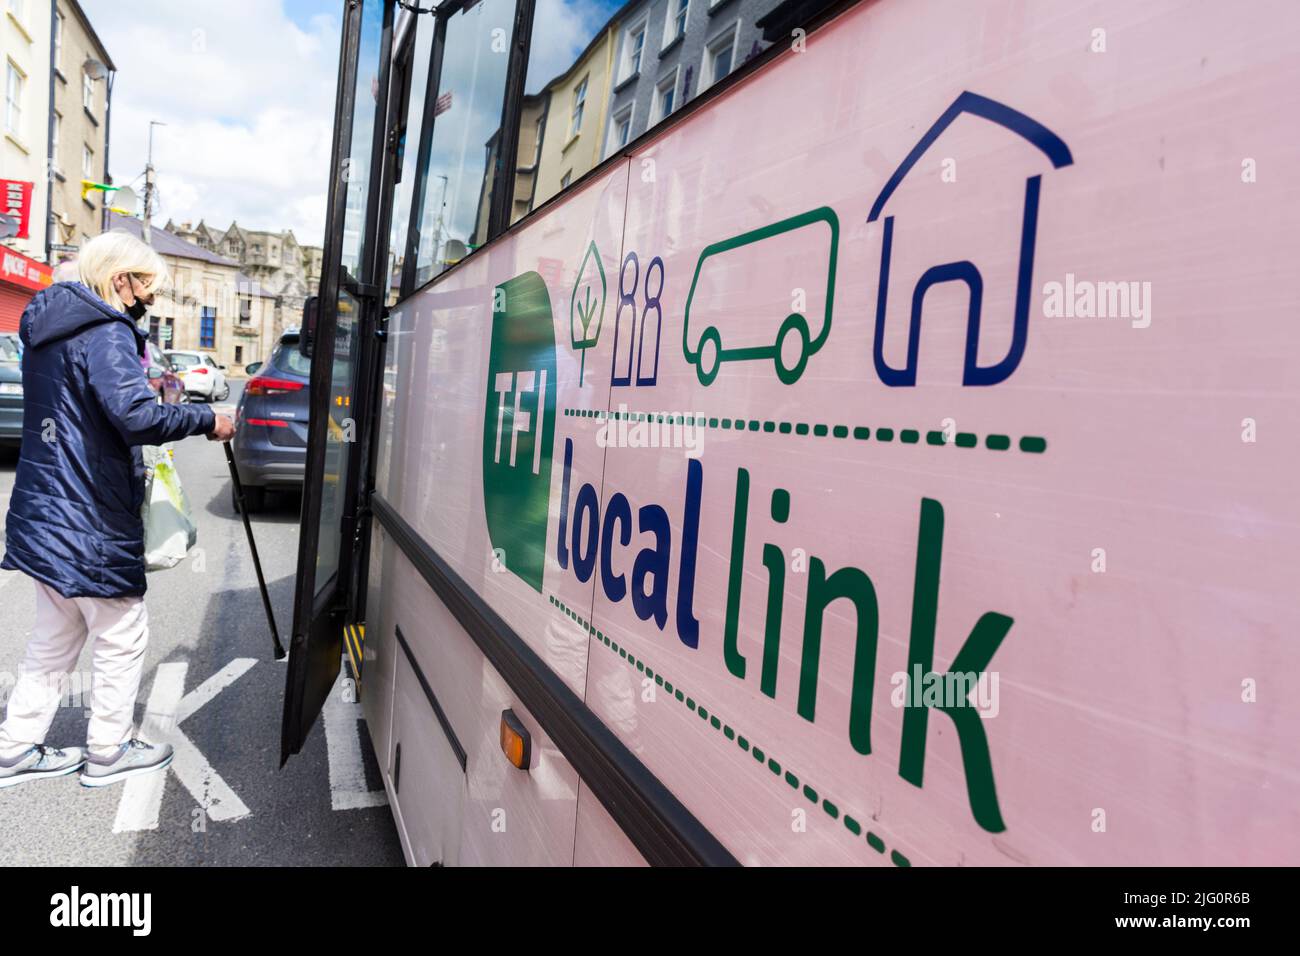 Programa de Transporte Rural/TFI Local Link Bus en la ciudad de Donegal, Condado de Donegal, Irlanda. Los pasajeros suben al autobús. Foto de stock